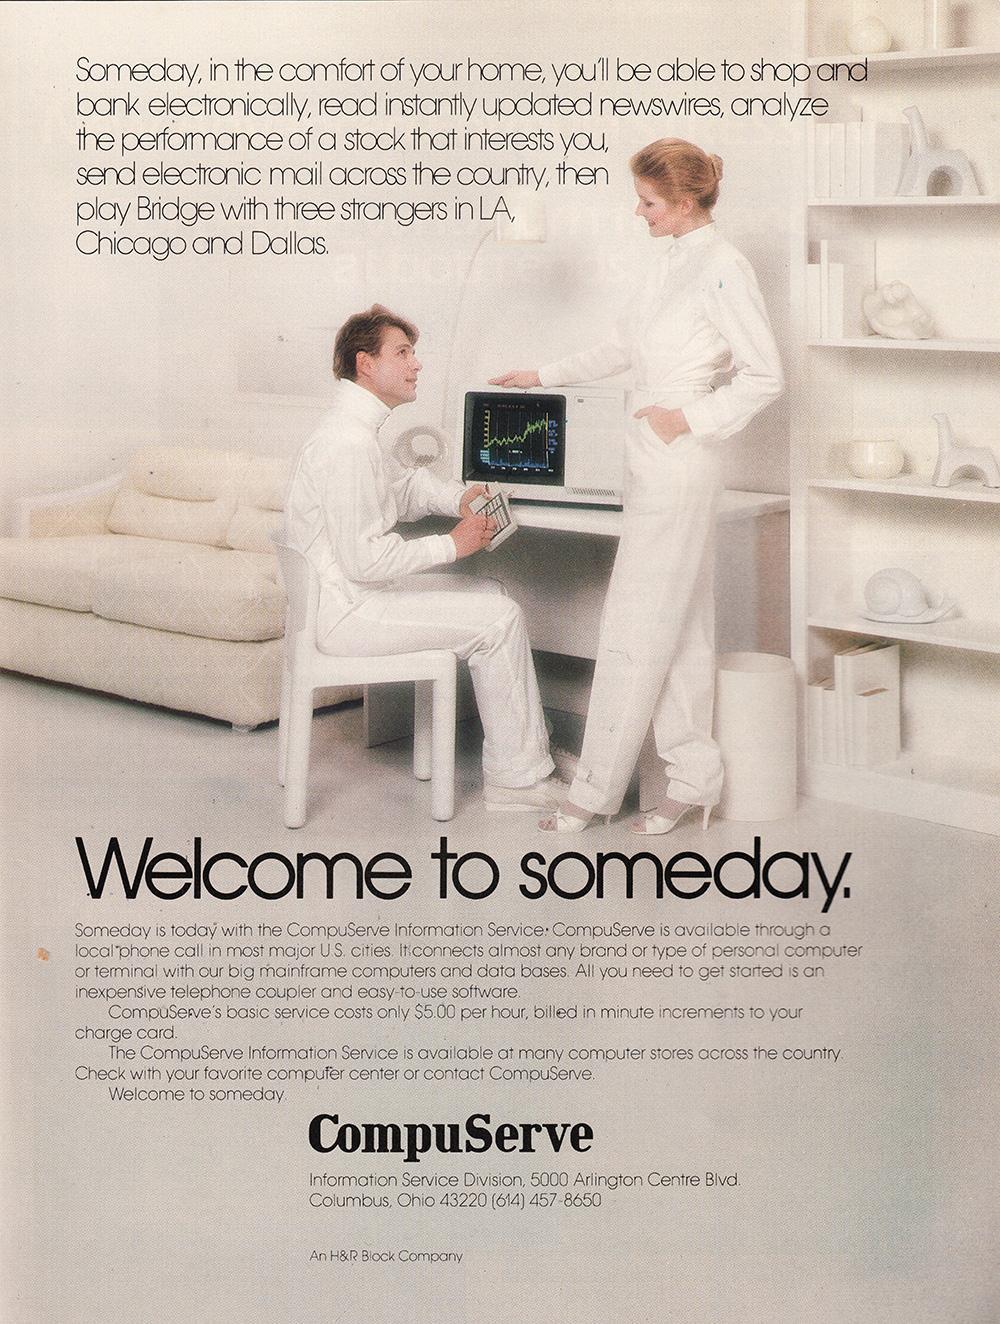 Anúncio de revista, folha inteira, da CompuServe. Homem sentado em frente a um computador olha para mulher, ambos vestidos de branco em um ambiente também branco, emanando futurismo. No texto maior, 'Welcome to someday.'